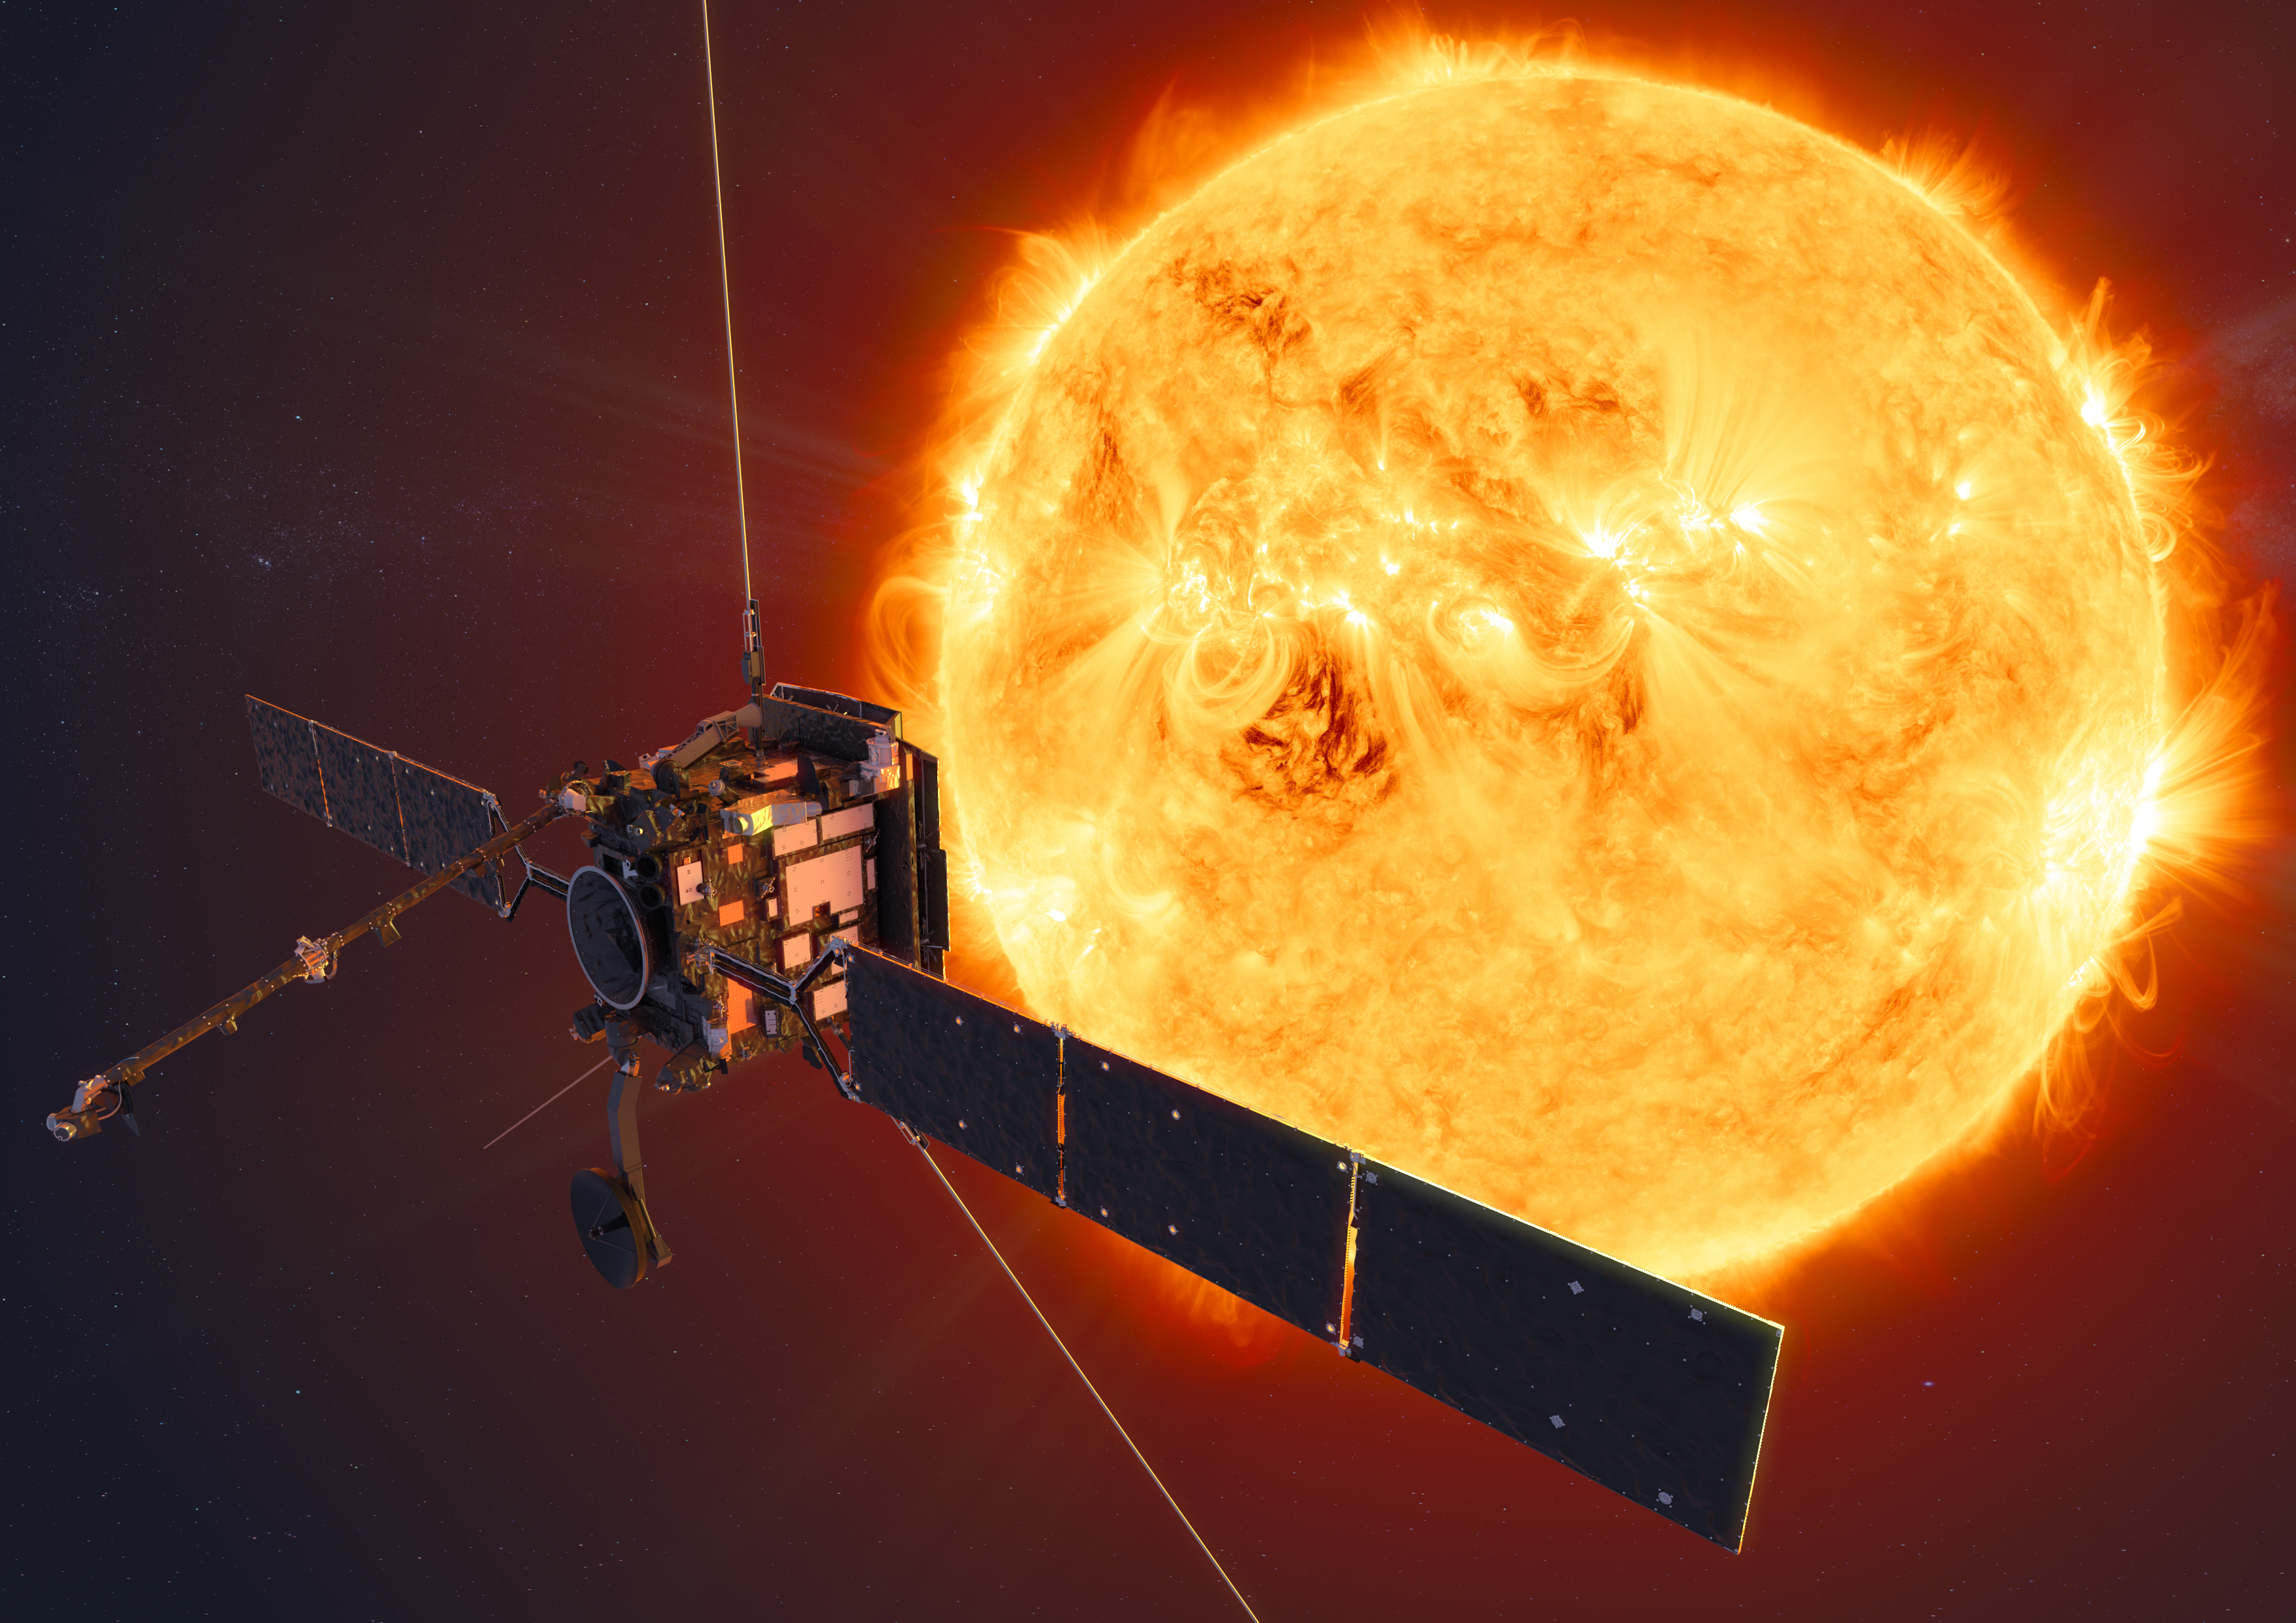 Concepto artístico de la nave espacial Solar Orbiter de la ESA. La misión Solar Orbiter de la ESA observará el Sol desde la órbita de Mercurio en su aproximación más cercana.Créditos: ESA/ATG medialab